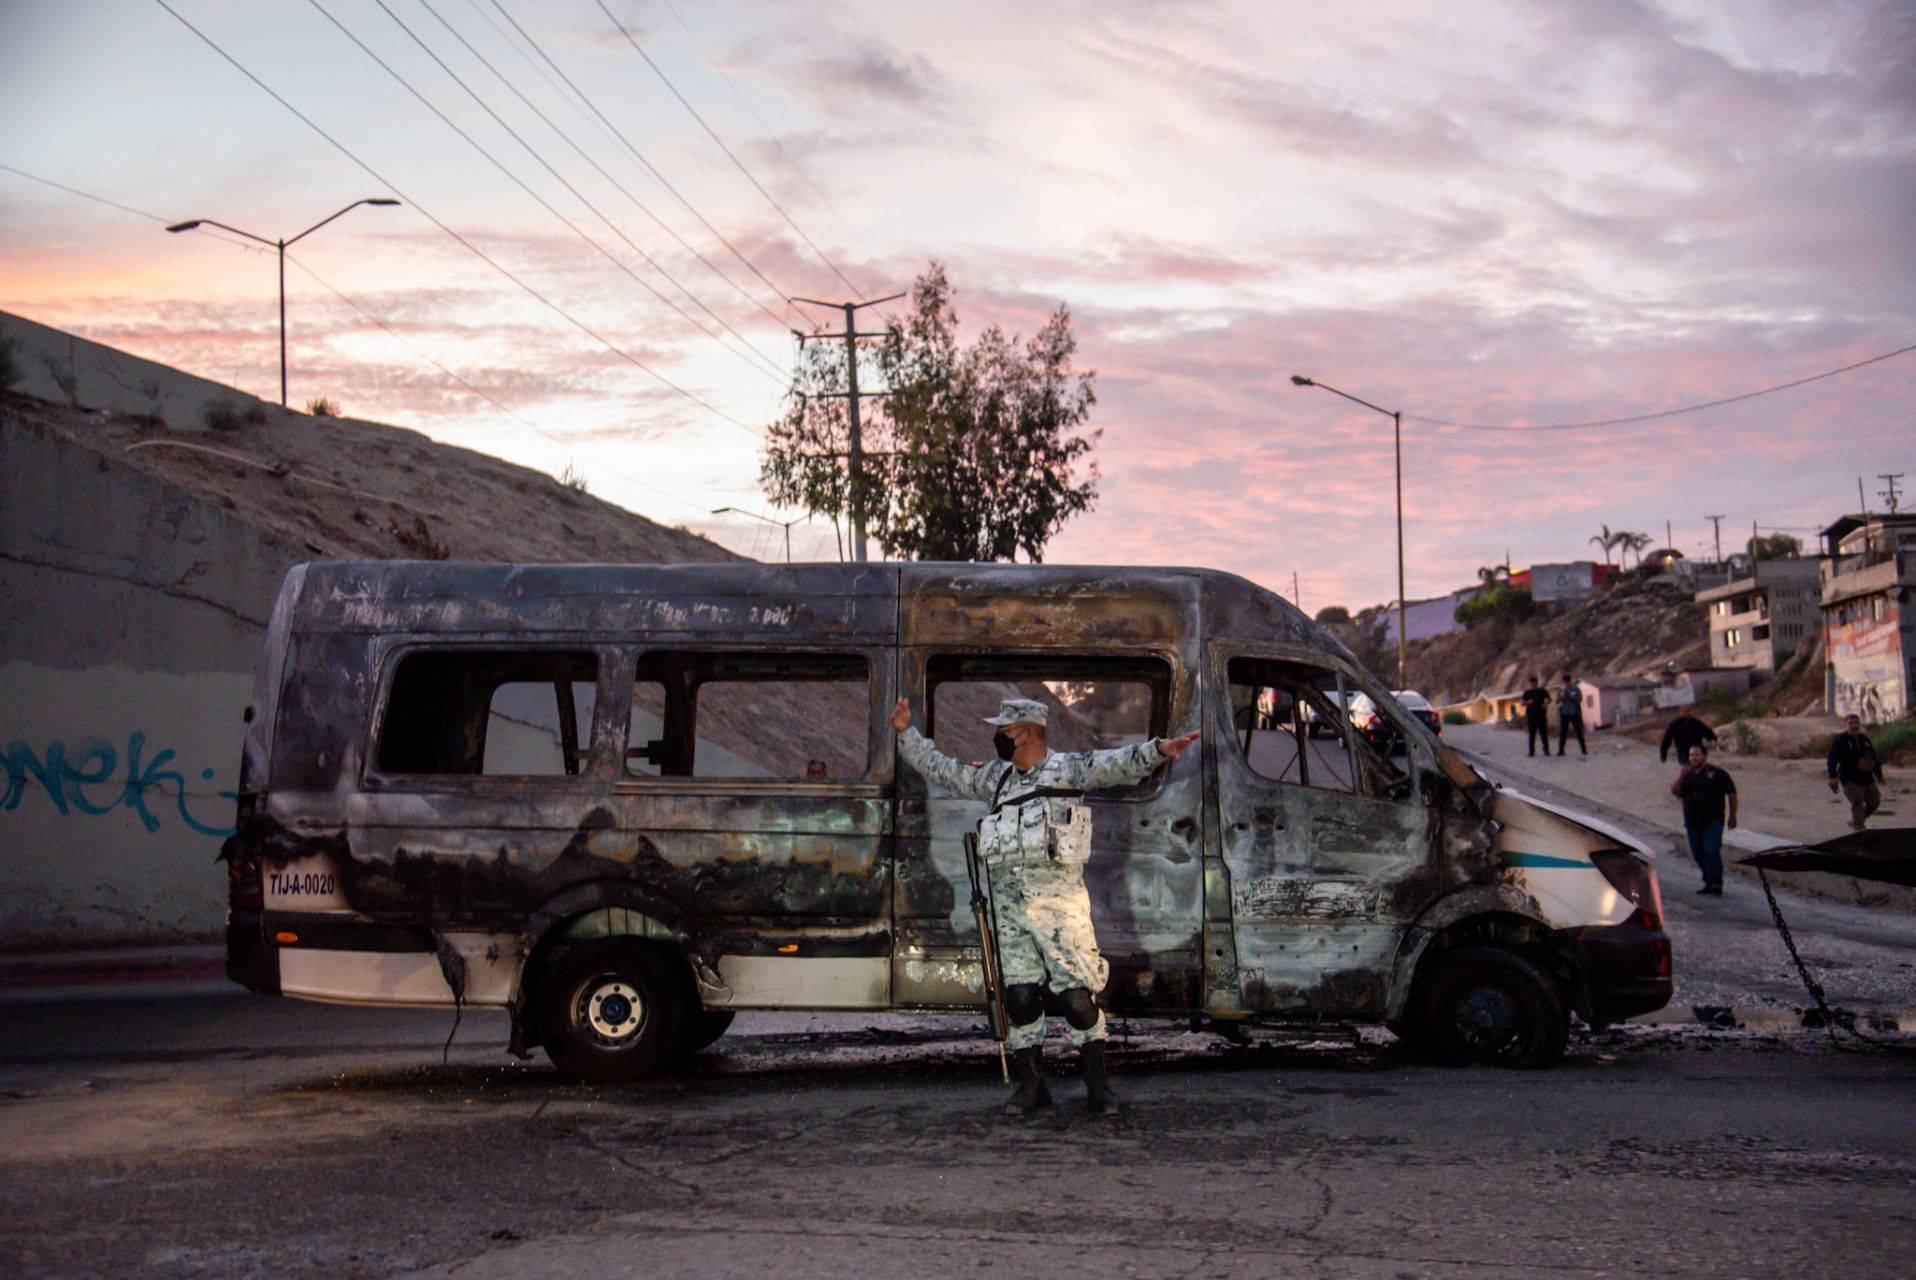 El municipio de Tijuana fue uno de los más afectados, pues al menos 12 unidades del transporte público fueron incendiadas (Foto: Cuartoscuro)